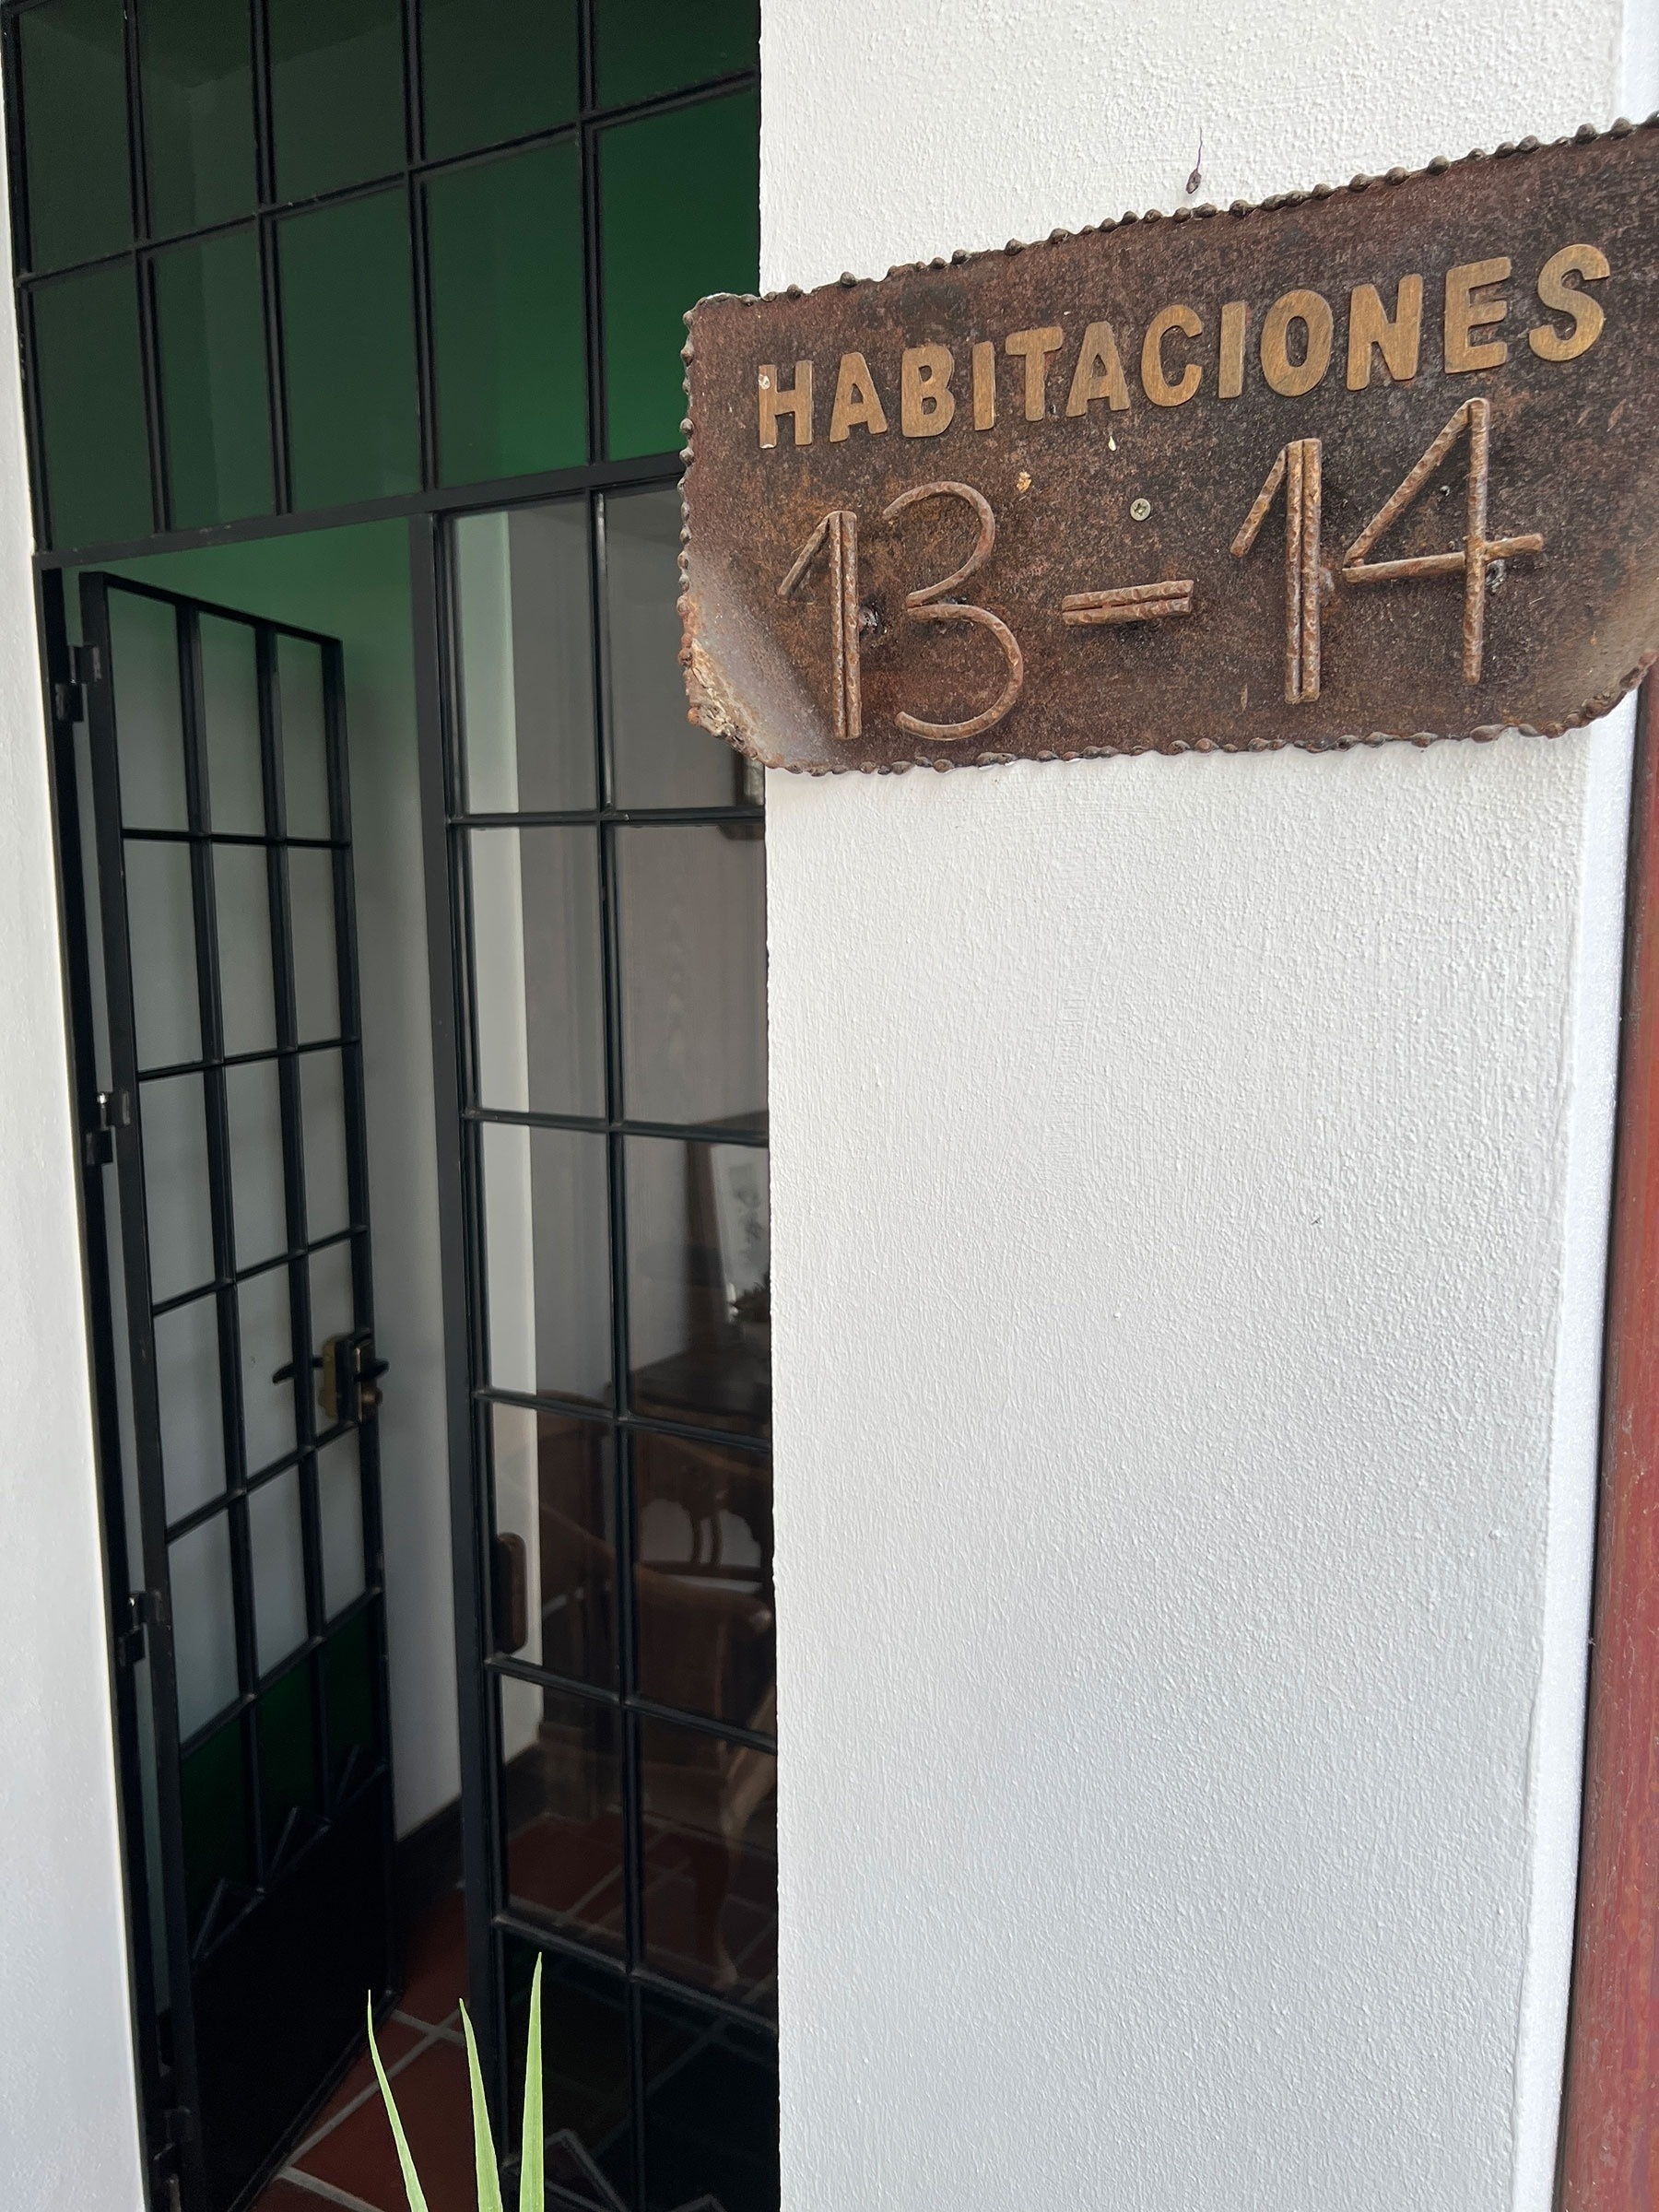 una puerta con un letrero que dice habitaciones 13-14